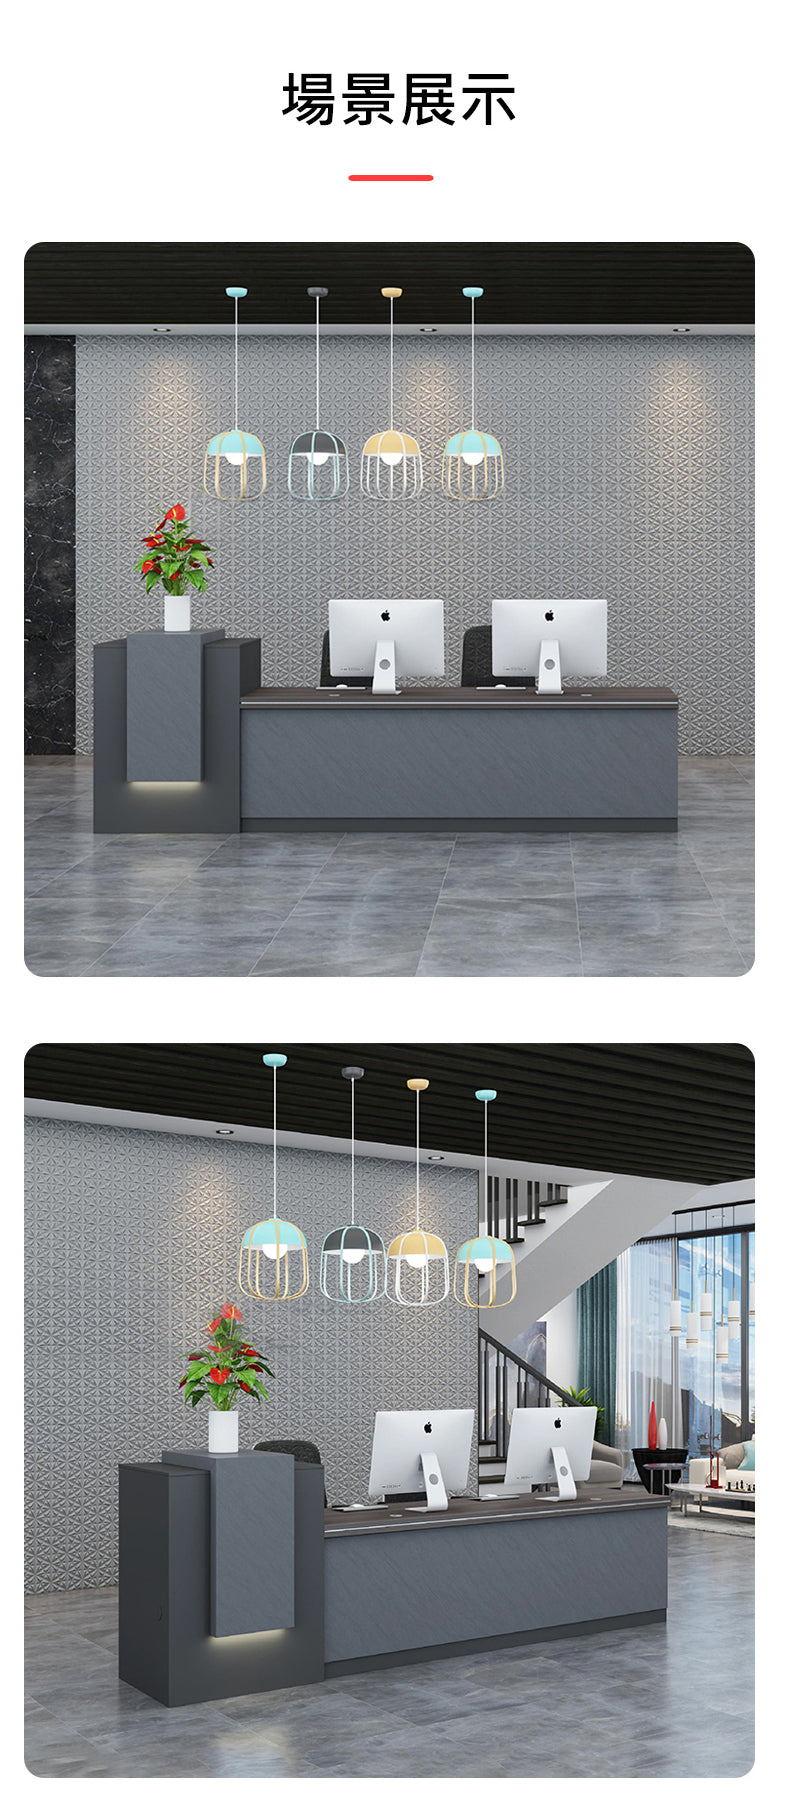 接待處家具 傢俱 傢俬 櫃枱 前台 E1 環保板材 LED 滲光 板腳 Reception table desk counter furniture